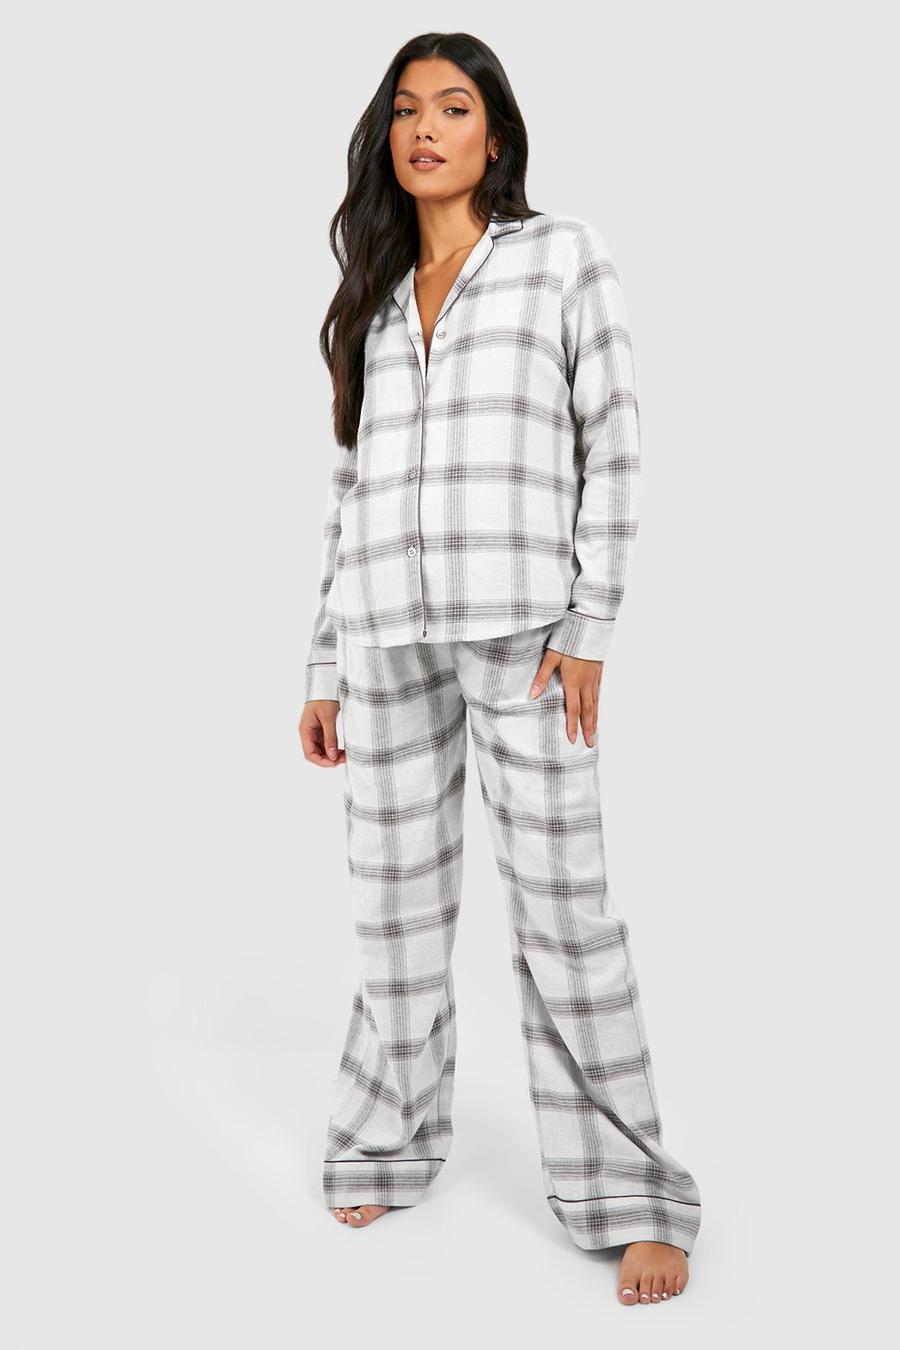 Pijama Premamá de cuadros cardados con botones, Cream blanco